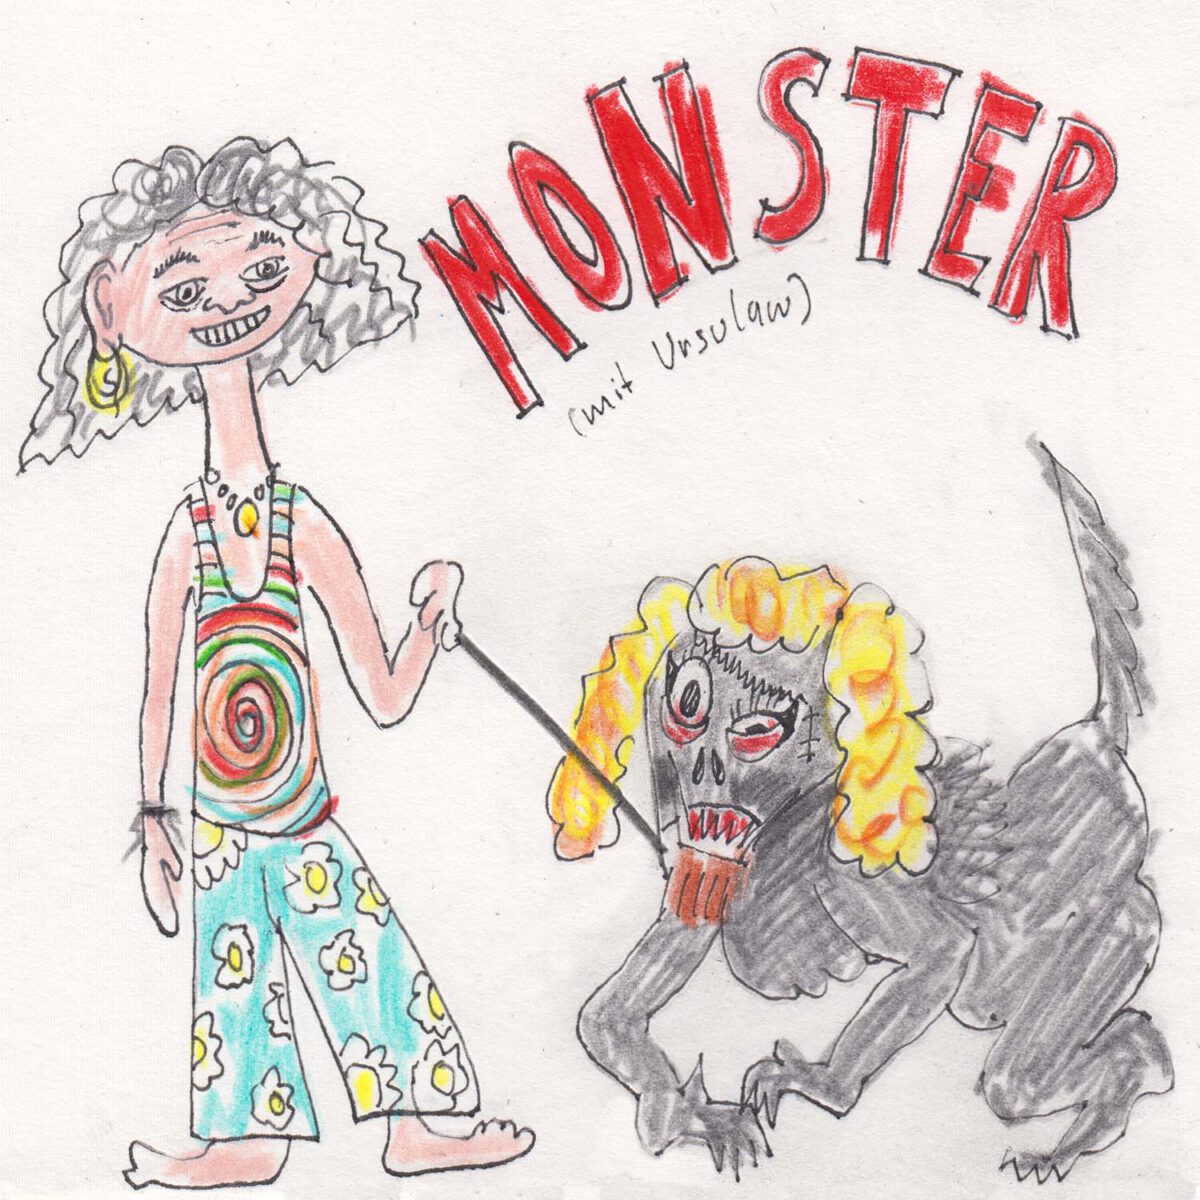 #0065 – Monster (mit Ursulaw)